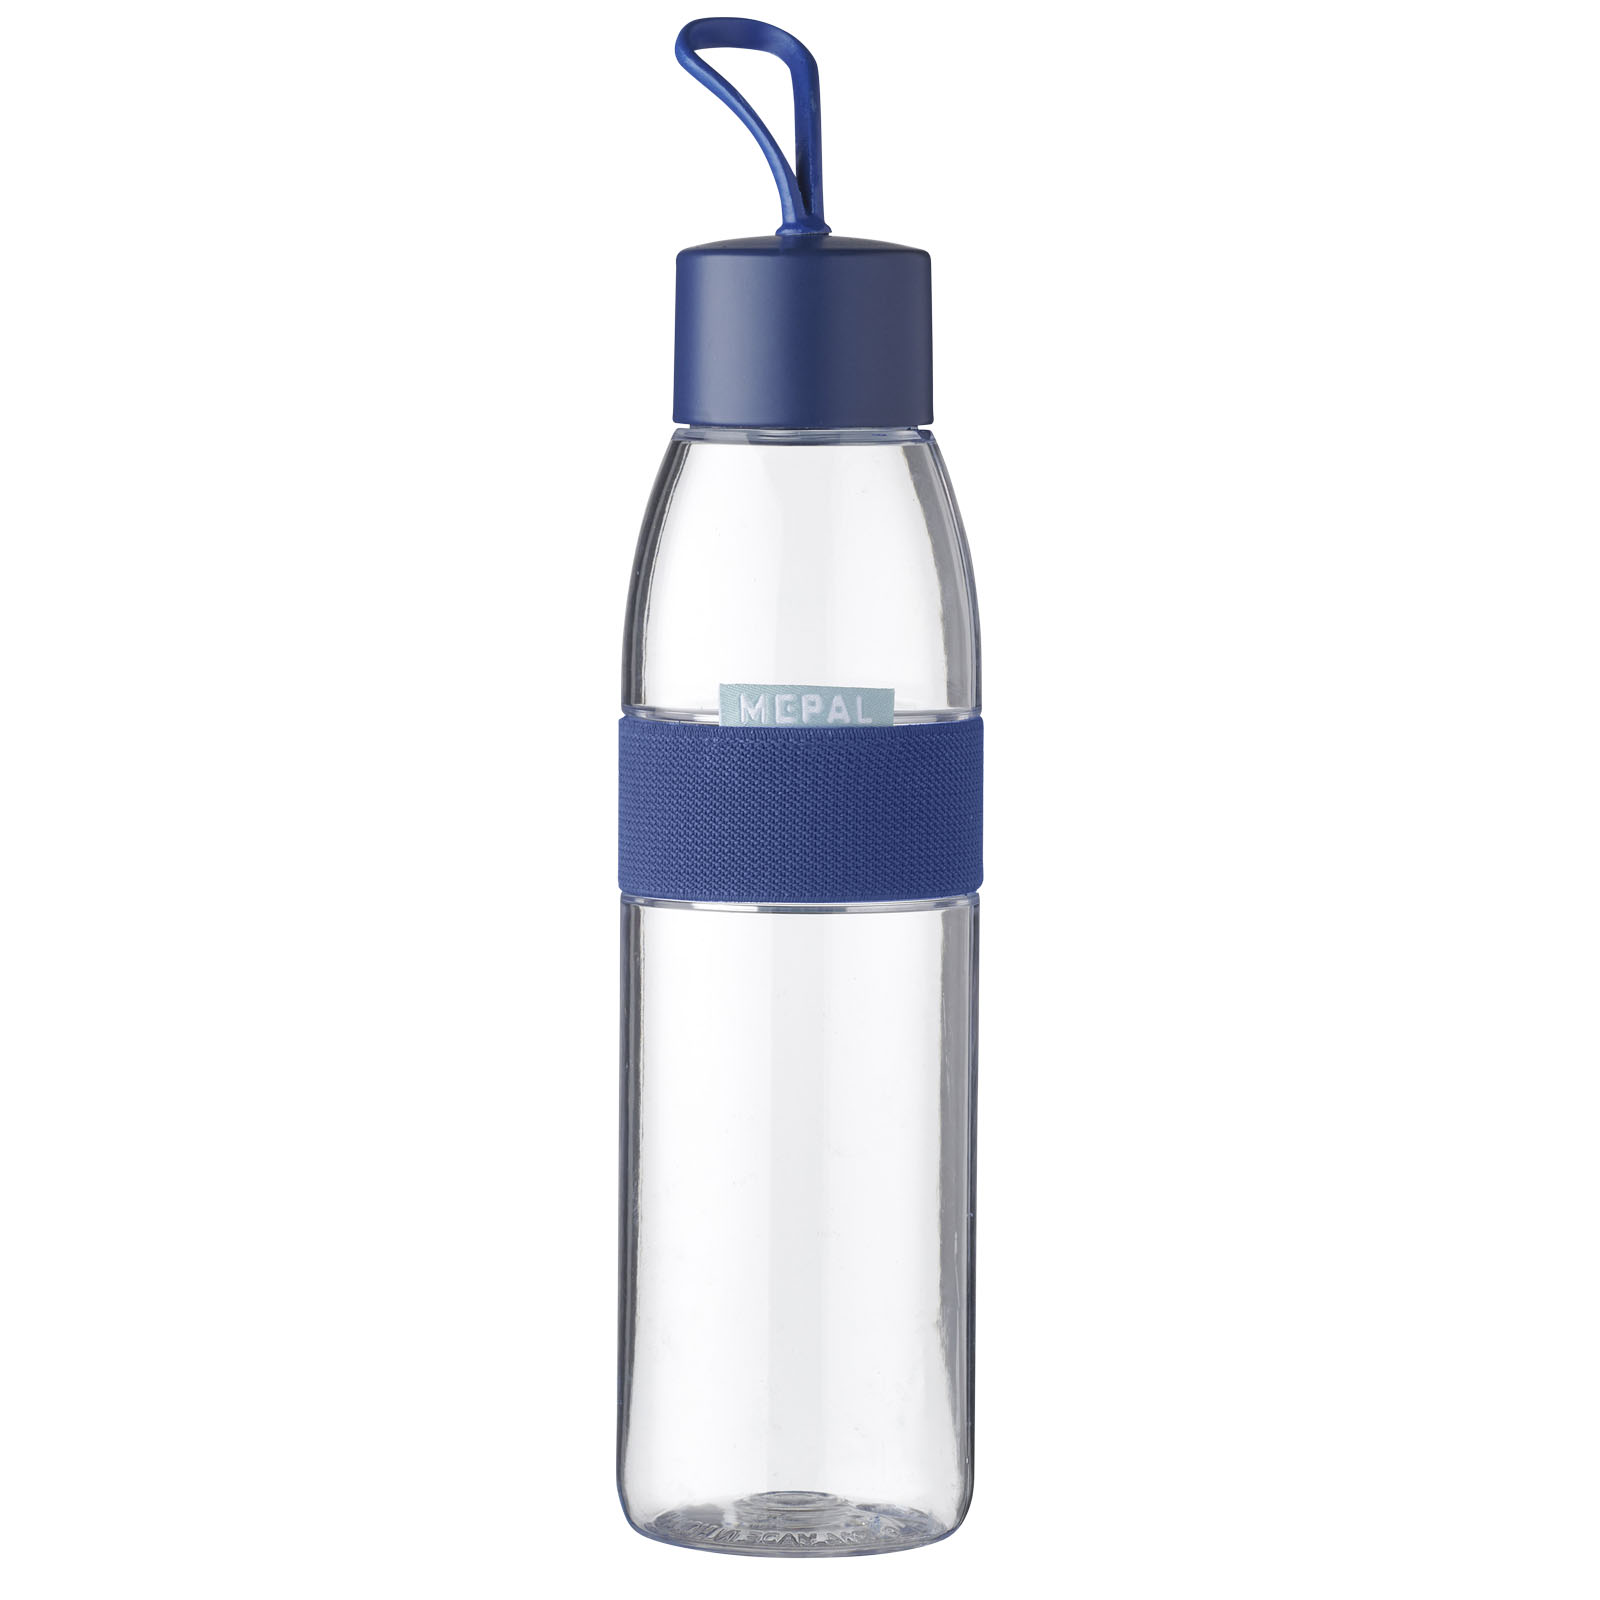 Drinkware - Mepal Ellipse 500 ml water bottle